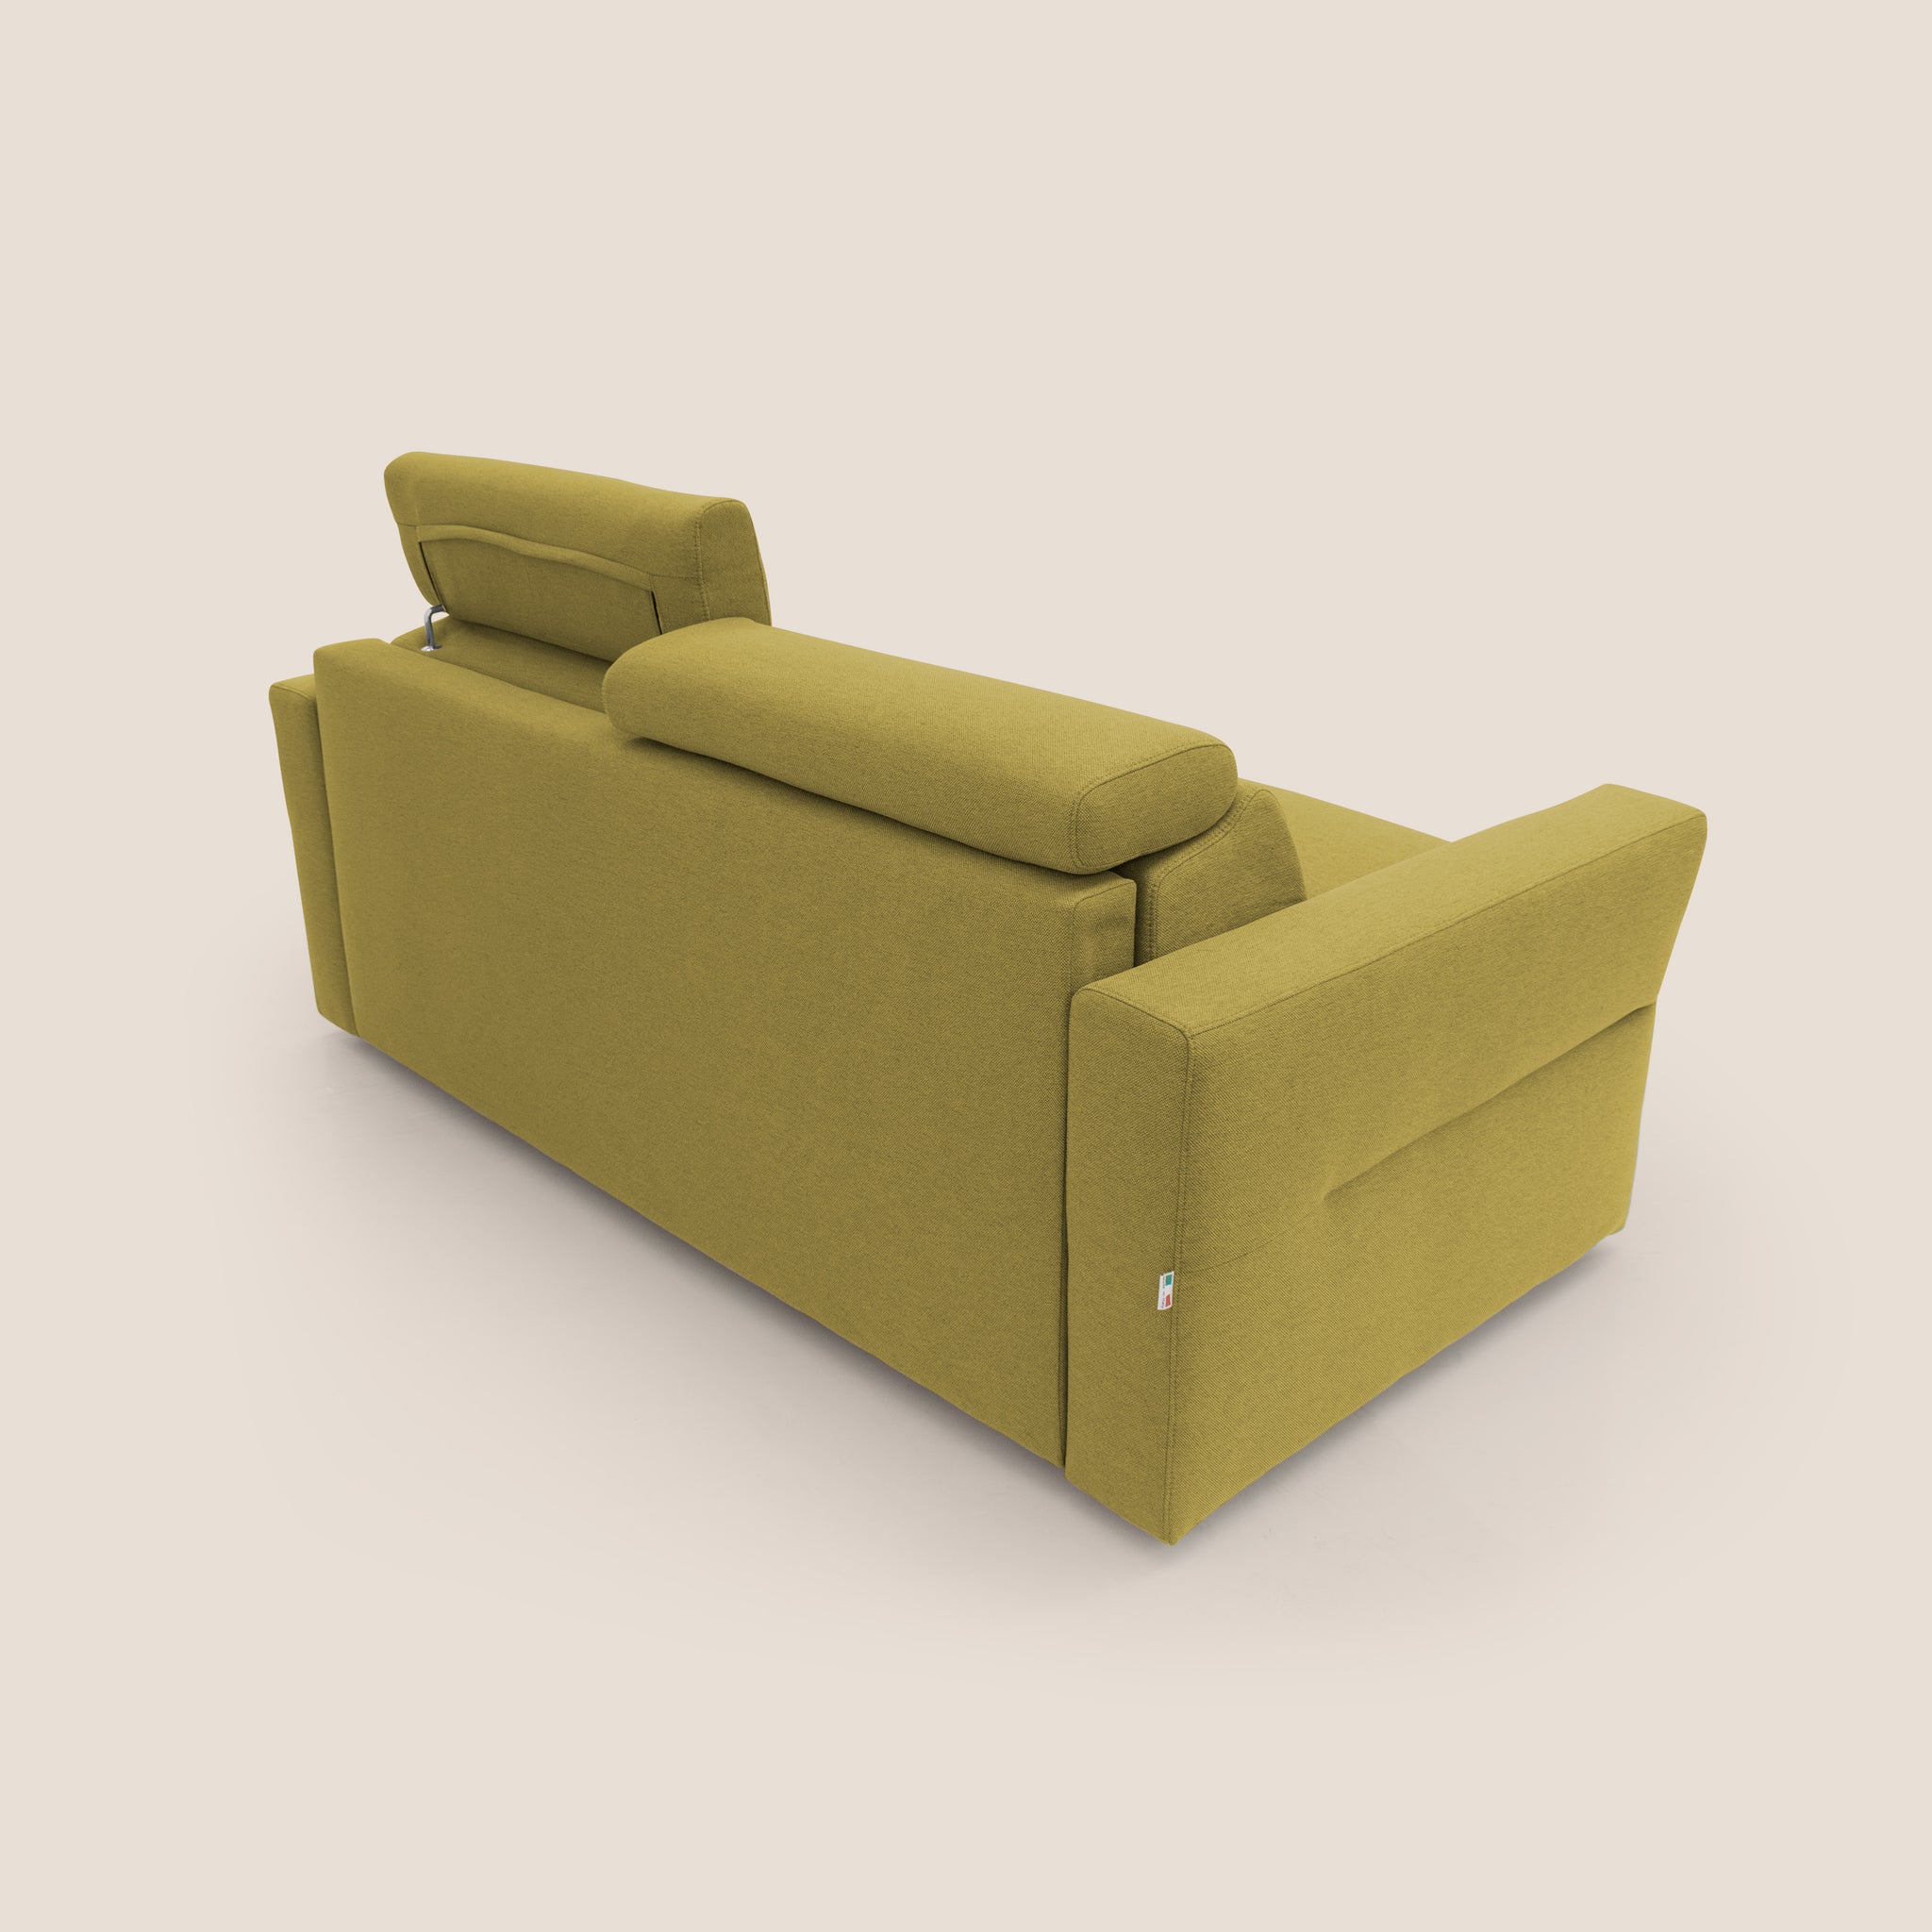 Avalon divano letto 100% ecosostenibile con materasso alto 18 cm in tessuto smacchiabile T05